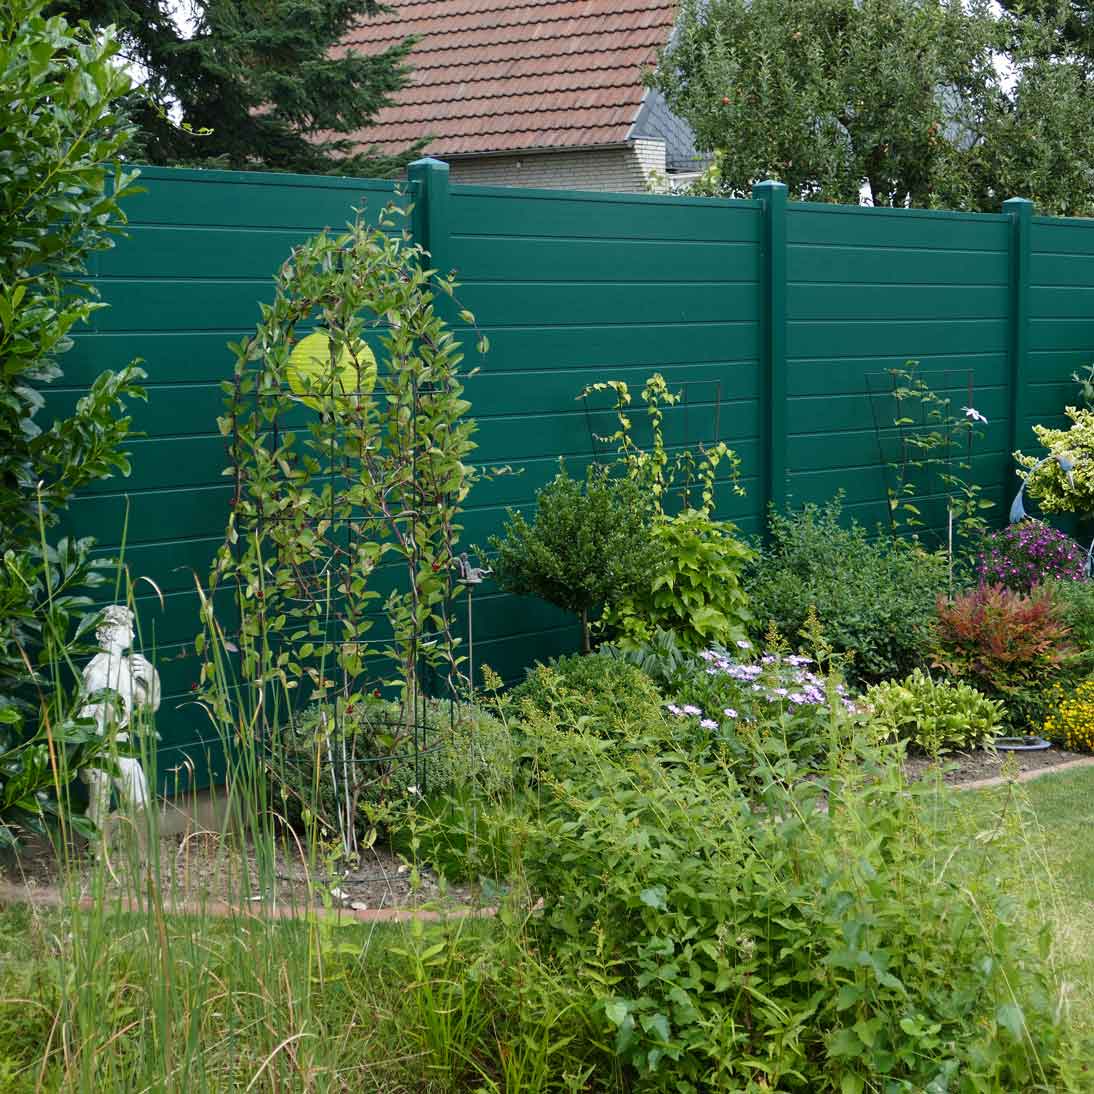 Sichtschutzzaun aus Kunststoff PVC in Moosgrün im Garten